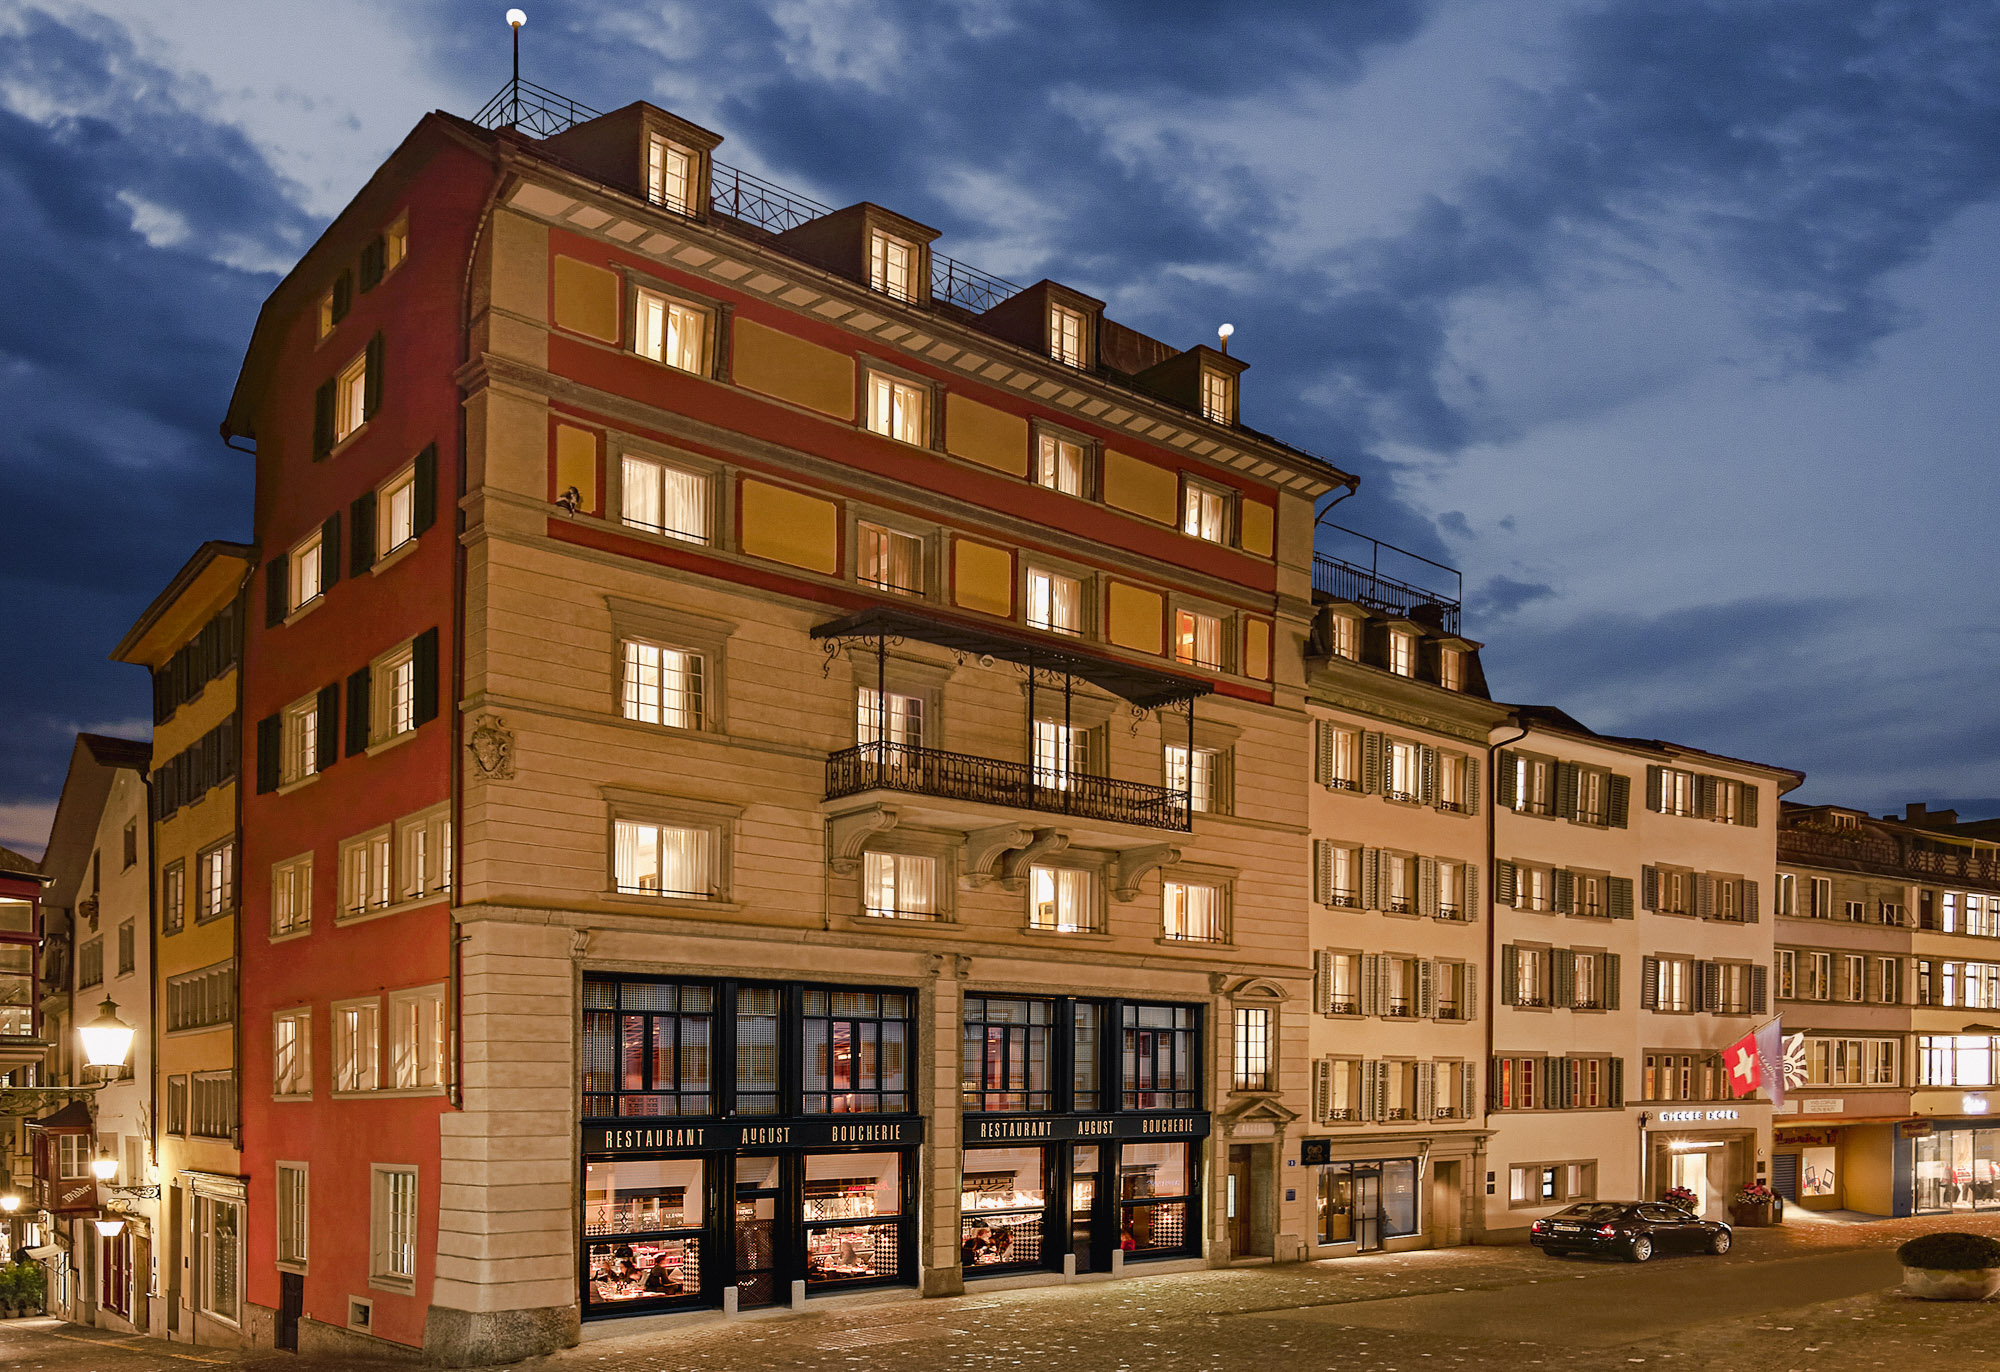 Widder Hotel Zurich Historical Buildings